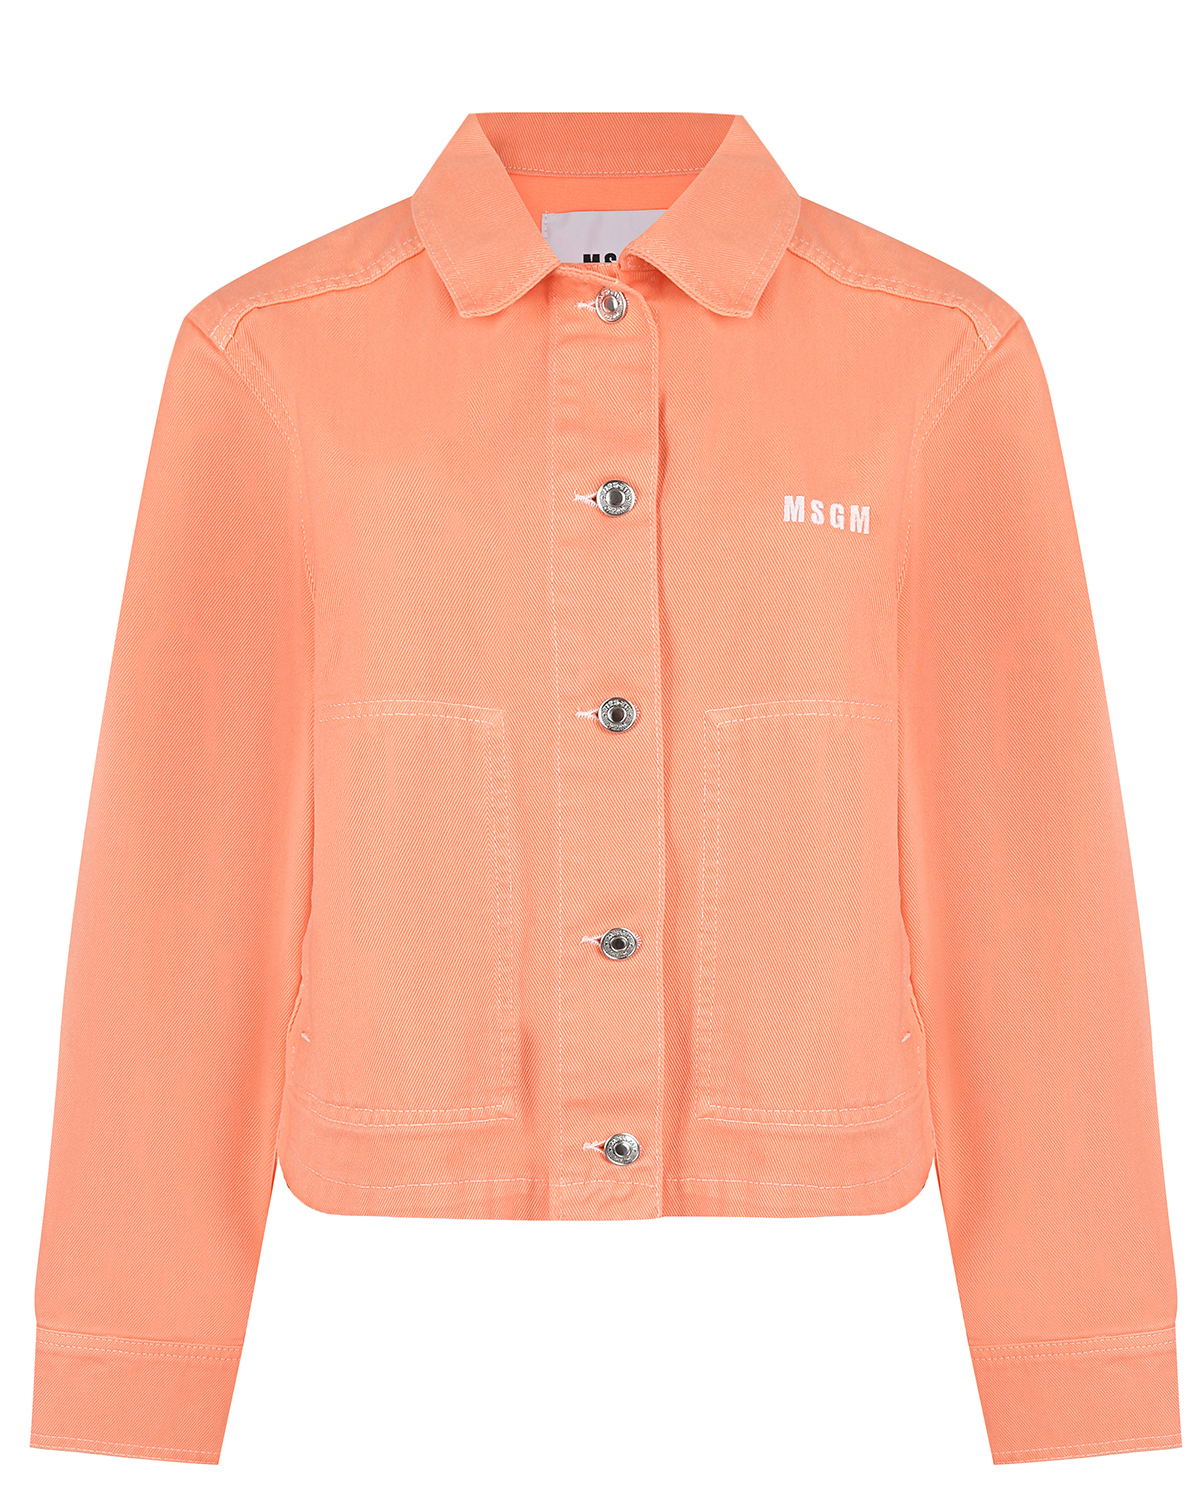 Оранжевая джинсовая куртка MSGM, размер 40, цвет оранжевый